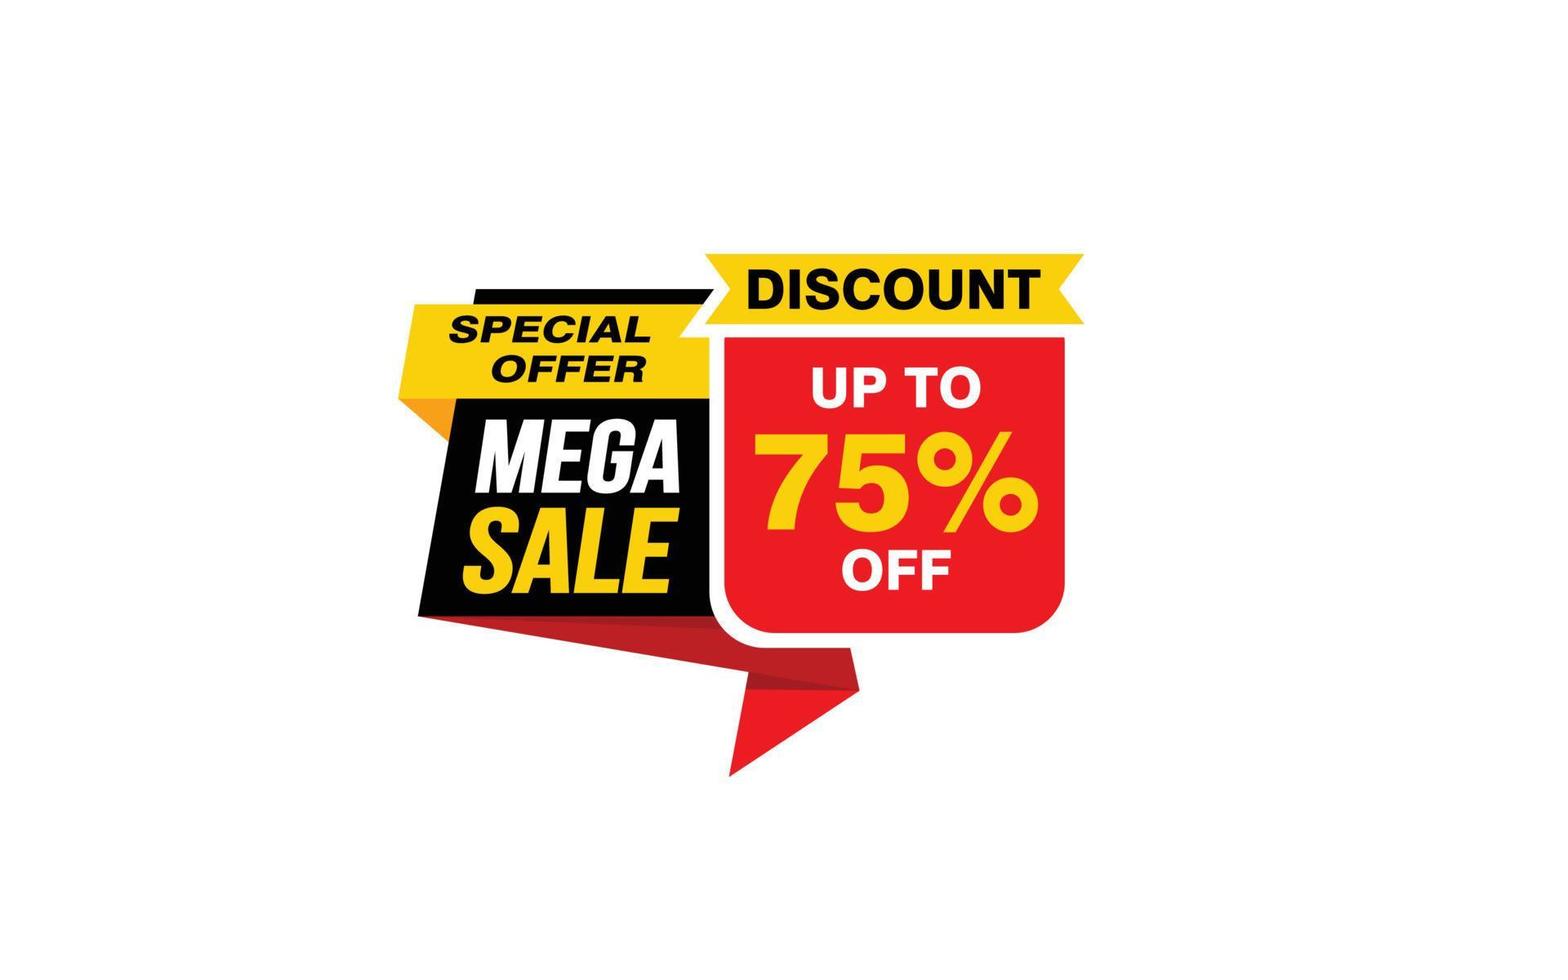 Oferta de mega venda de 75%, liberação, layout de banner de promoção com estilo de adesivo. vetor